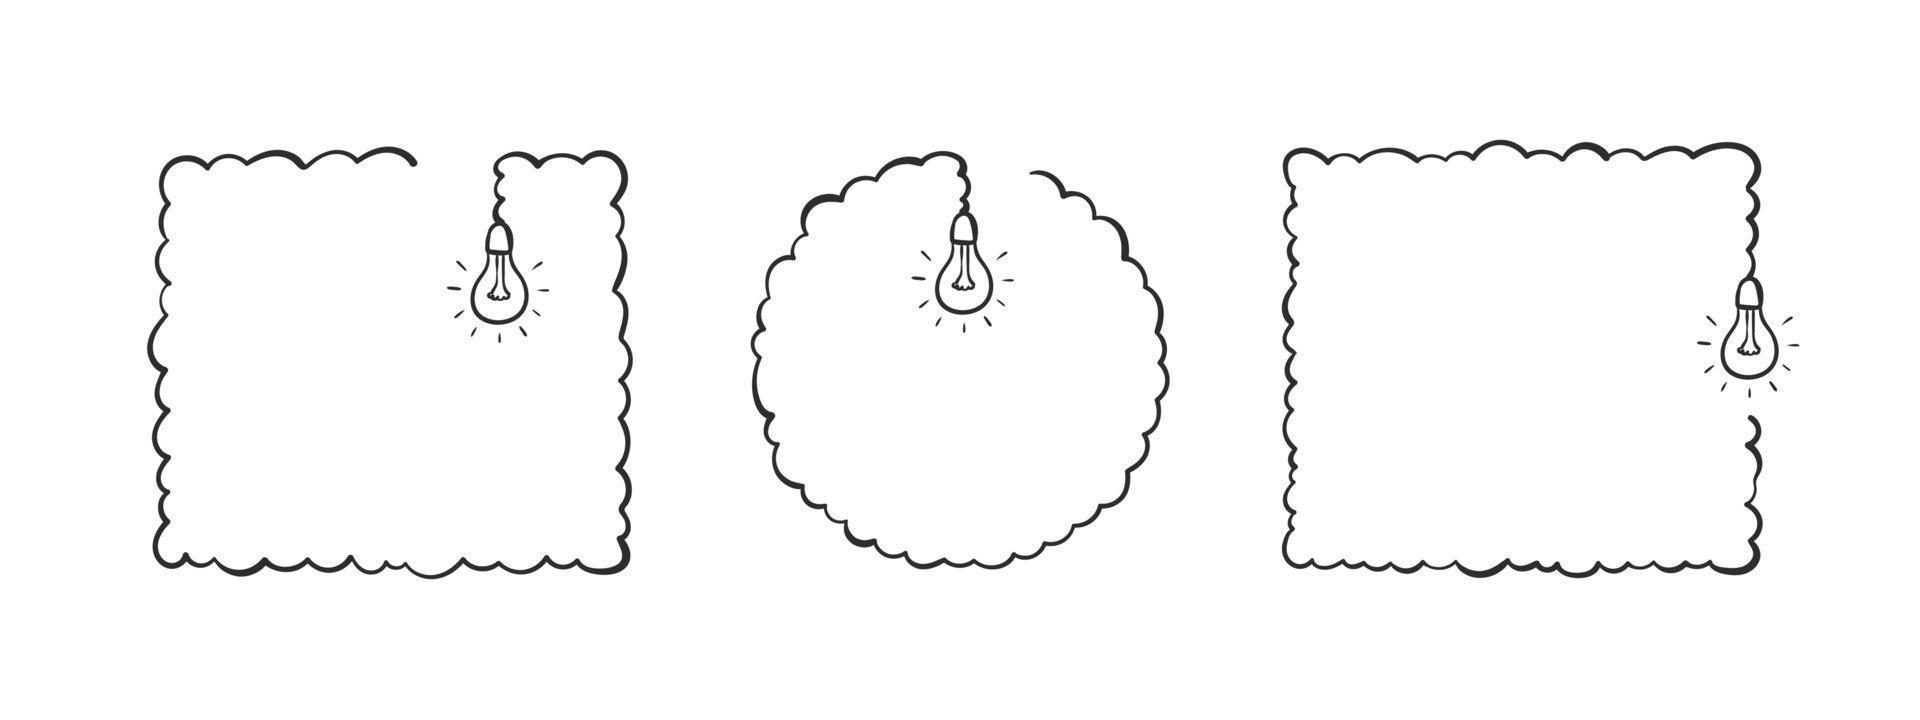 cadres avec ampoules. esquisse de cadres. cadres dessinés à la main avec des ampoules. illustration vectorielle vecteur